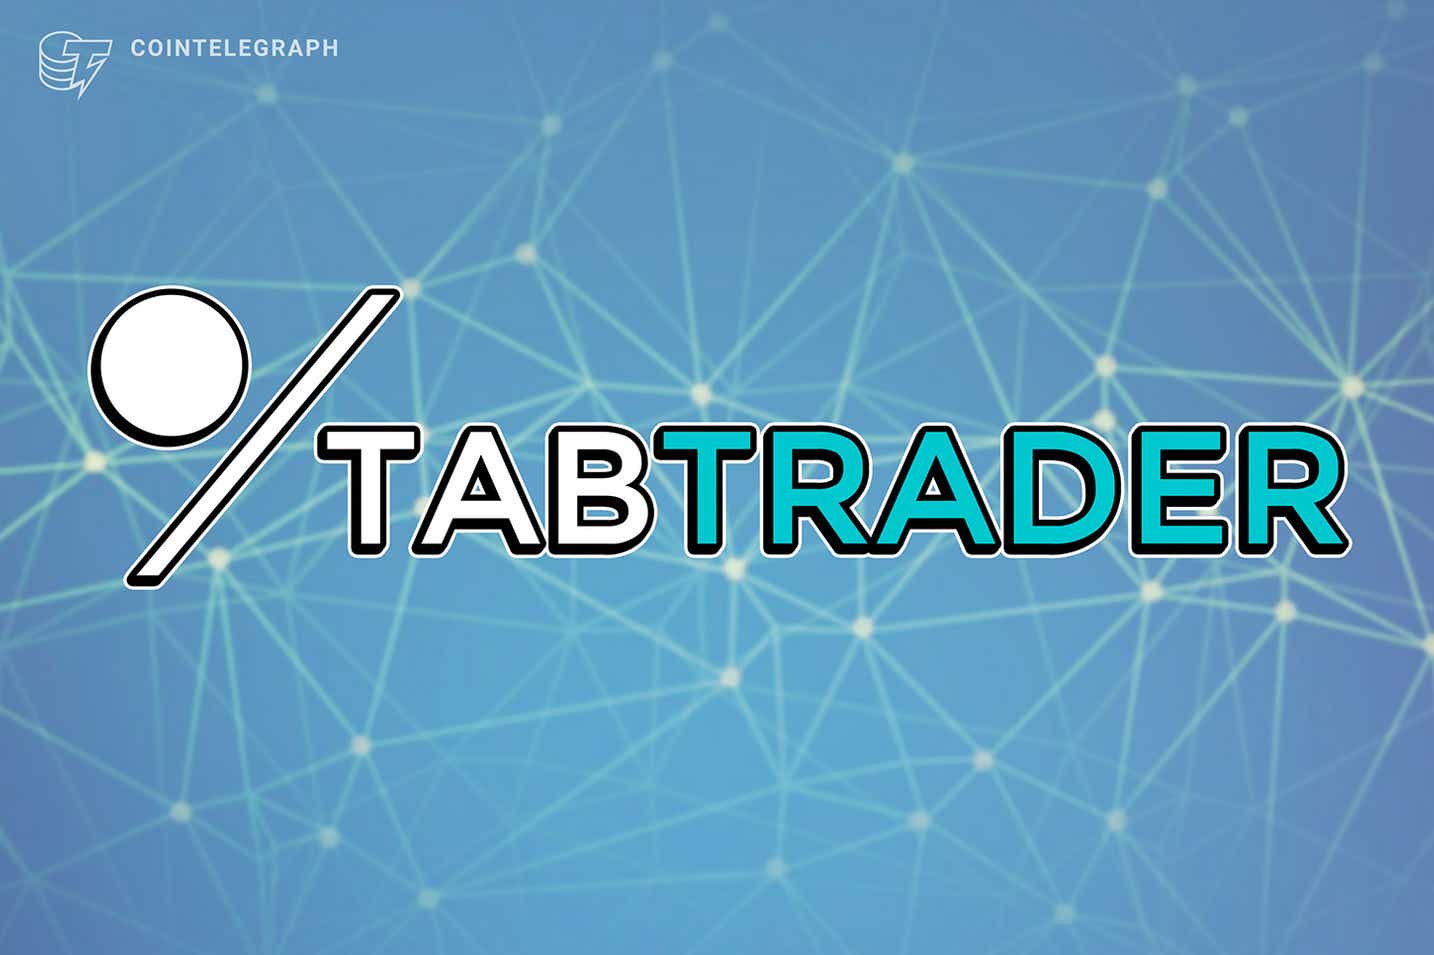 Công cụ tổng hợp giao dịch tiền điện tử TabTrader tăng 5,8 triệu đô la